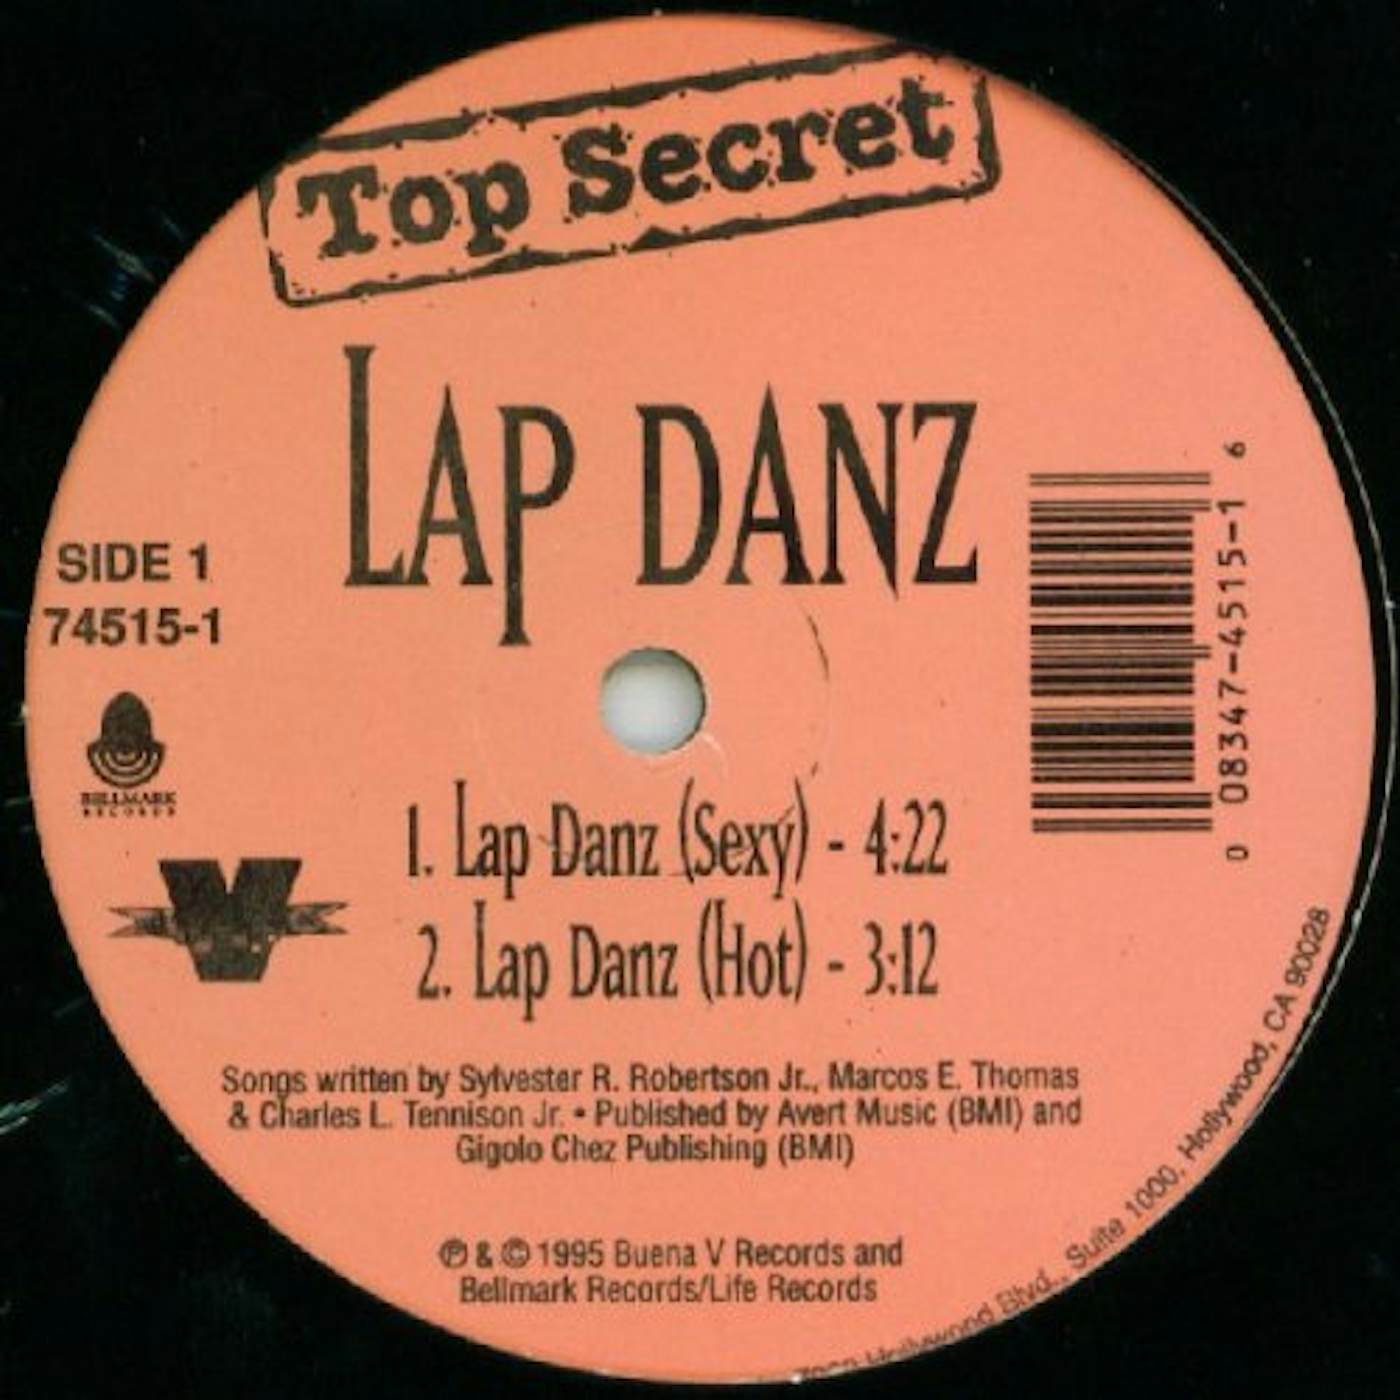 Top Secret Lap Danz Vinyl Record